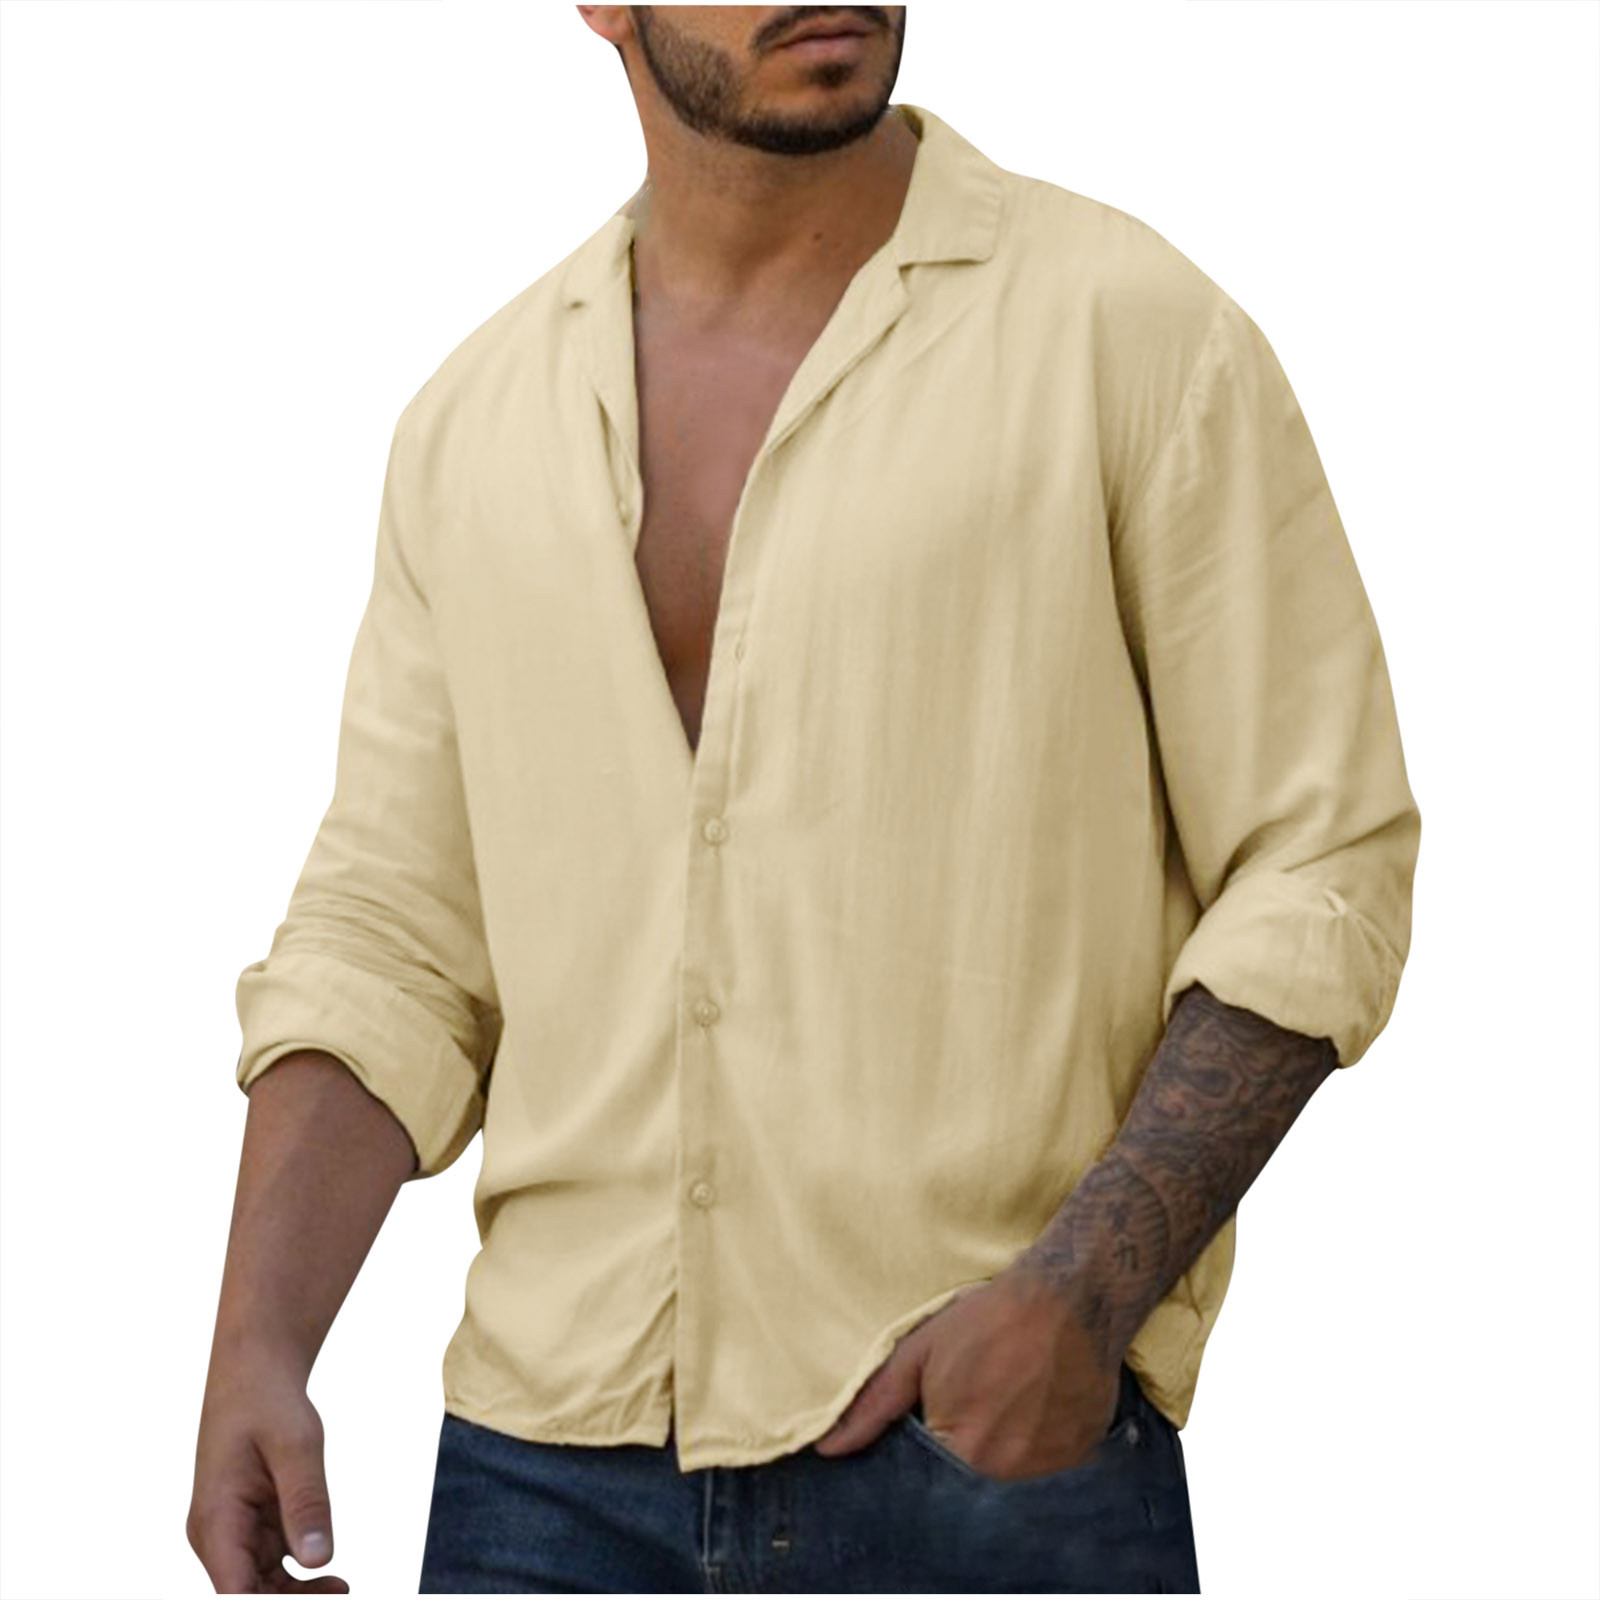 Odeerbi Cotton Linen Beach Shirts for Men Button Up Long Sleeve Shirts ...